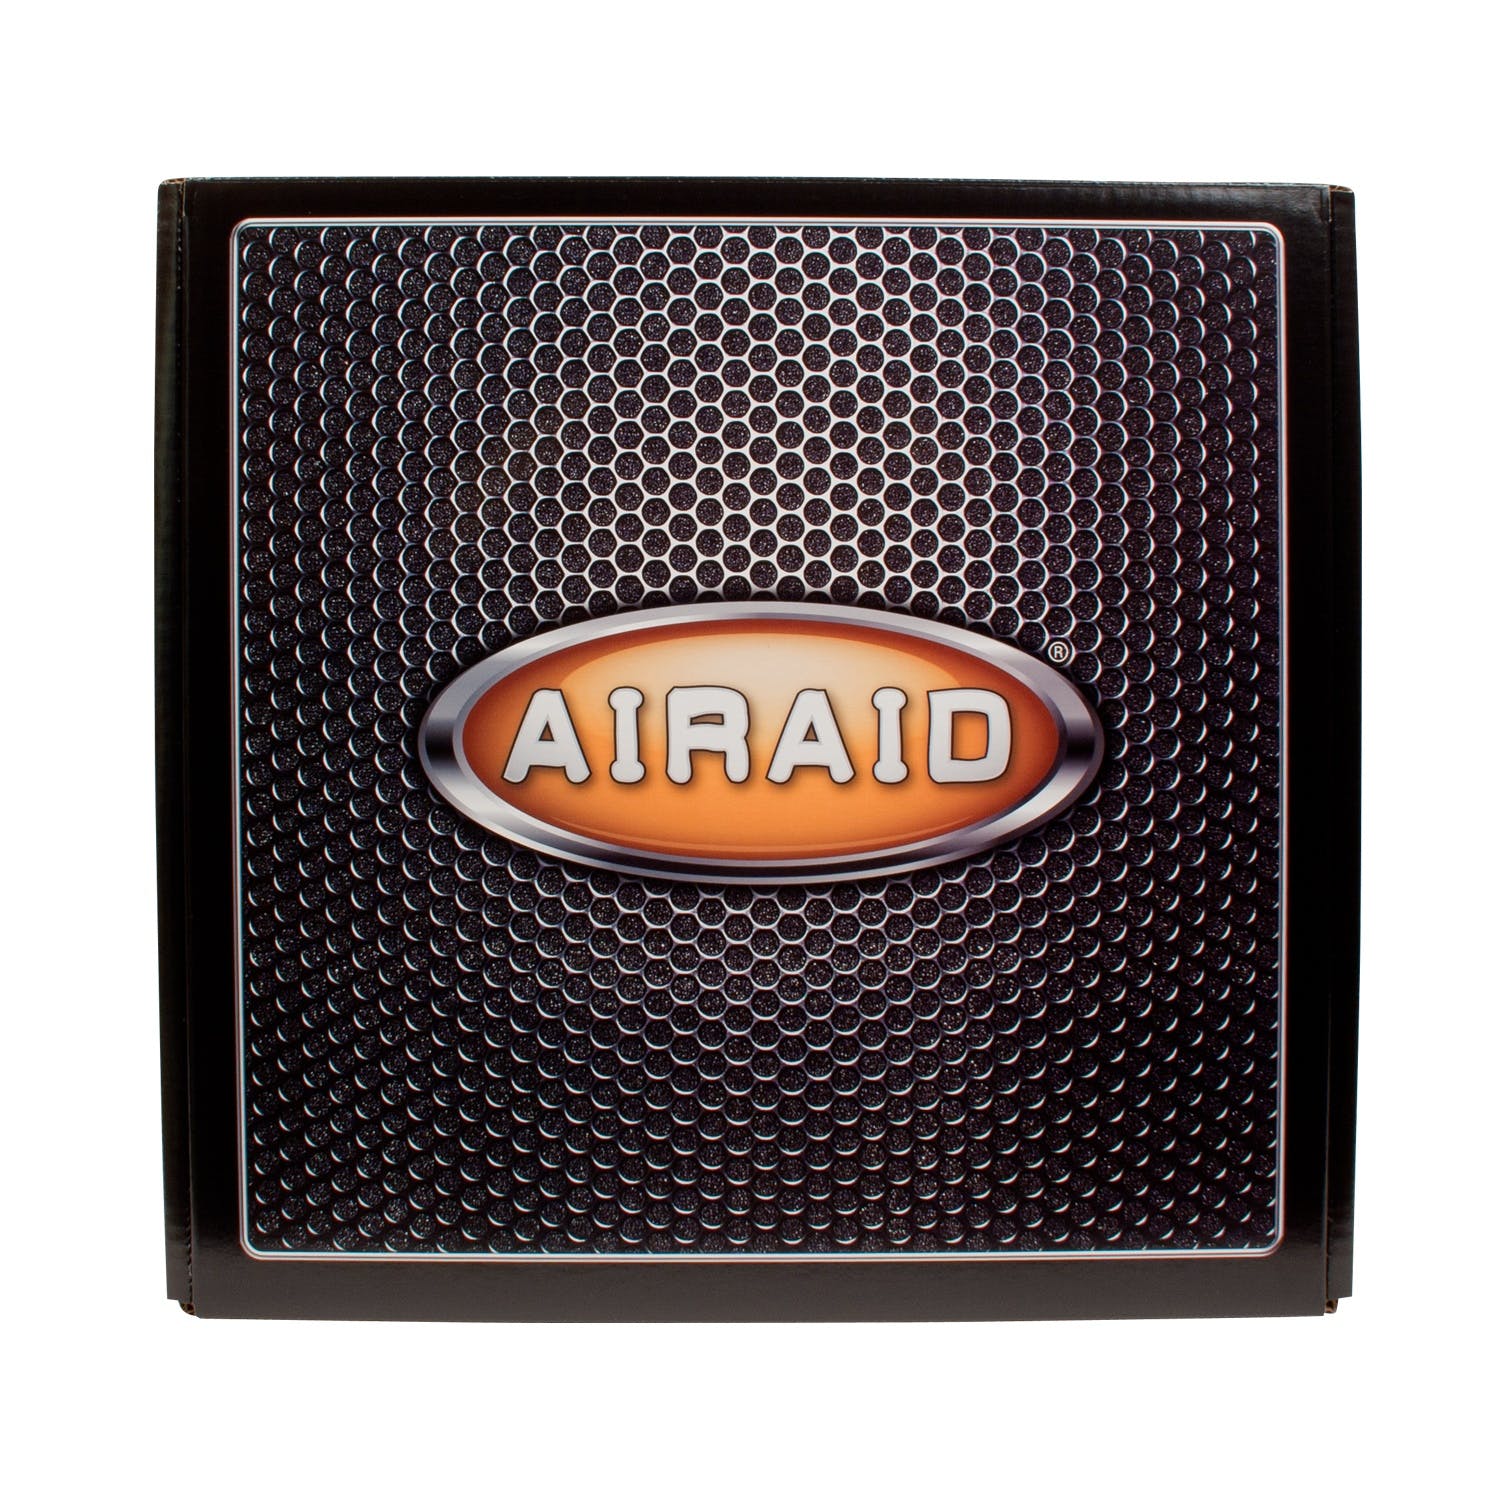 AIRAID 200-183 Performance Air Intake System